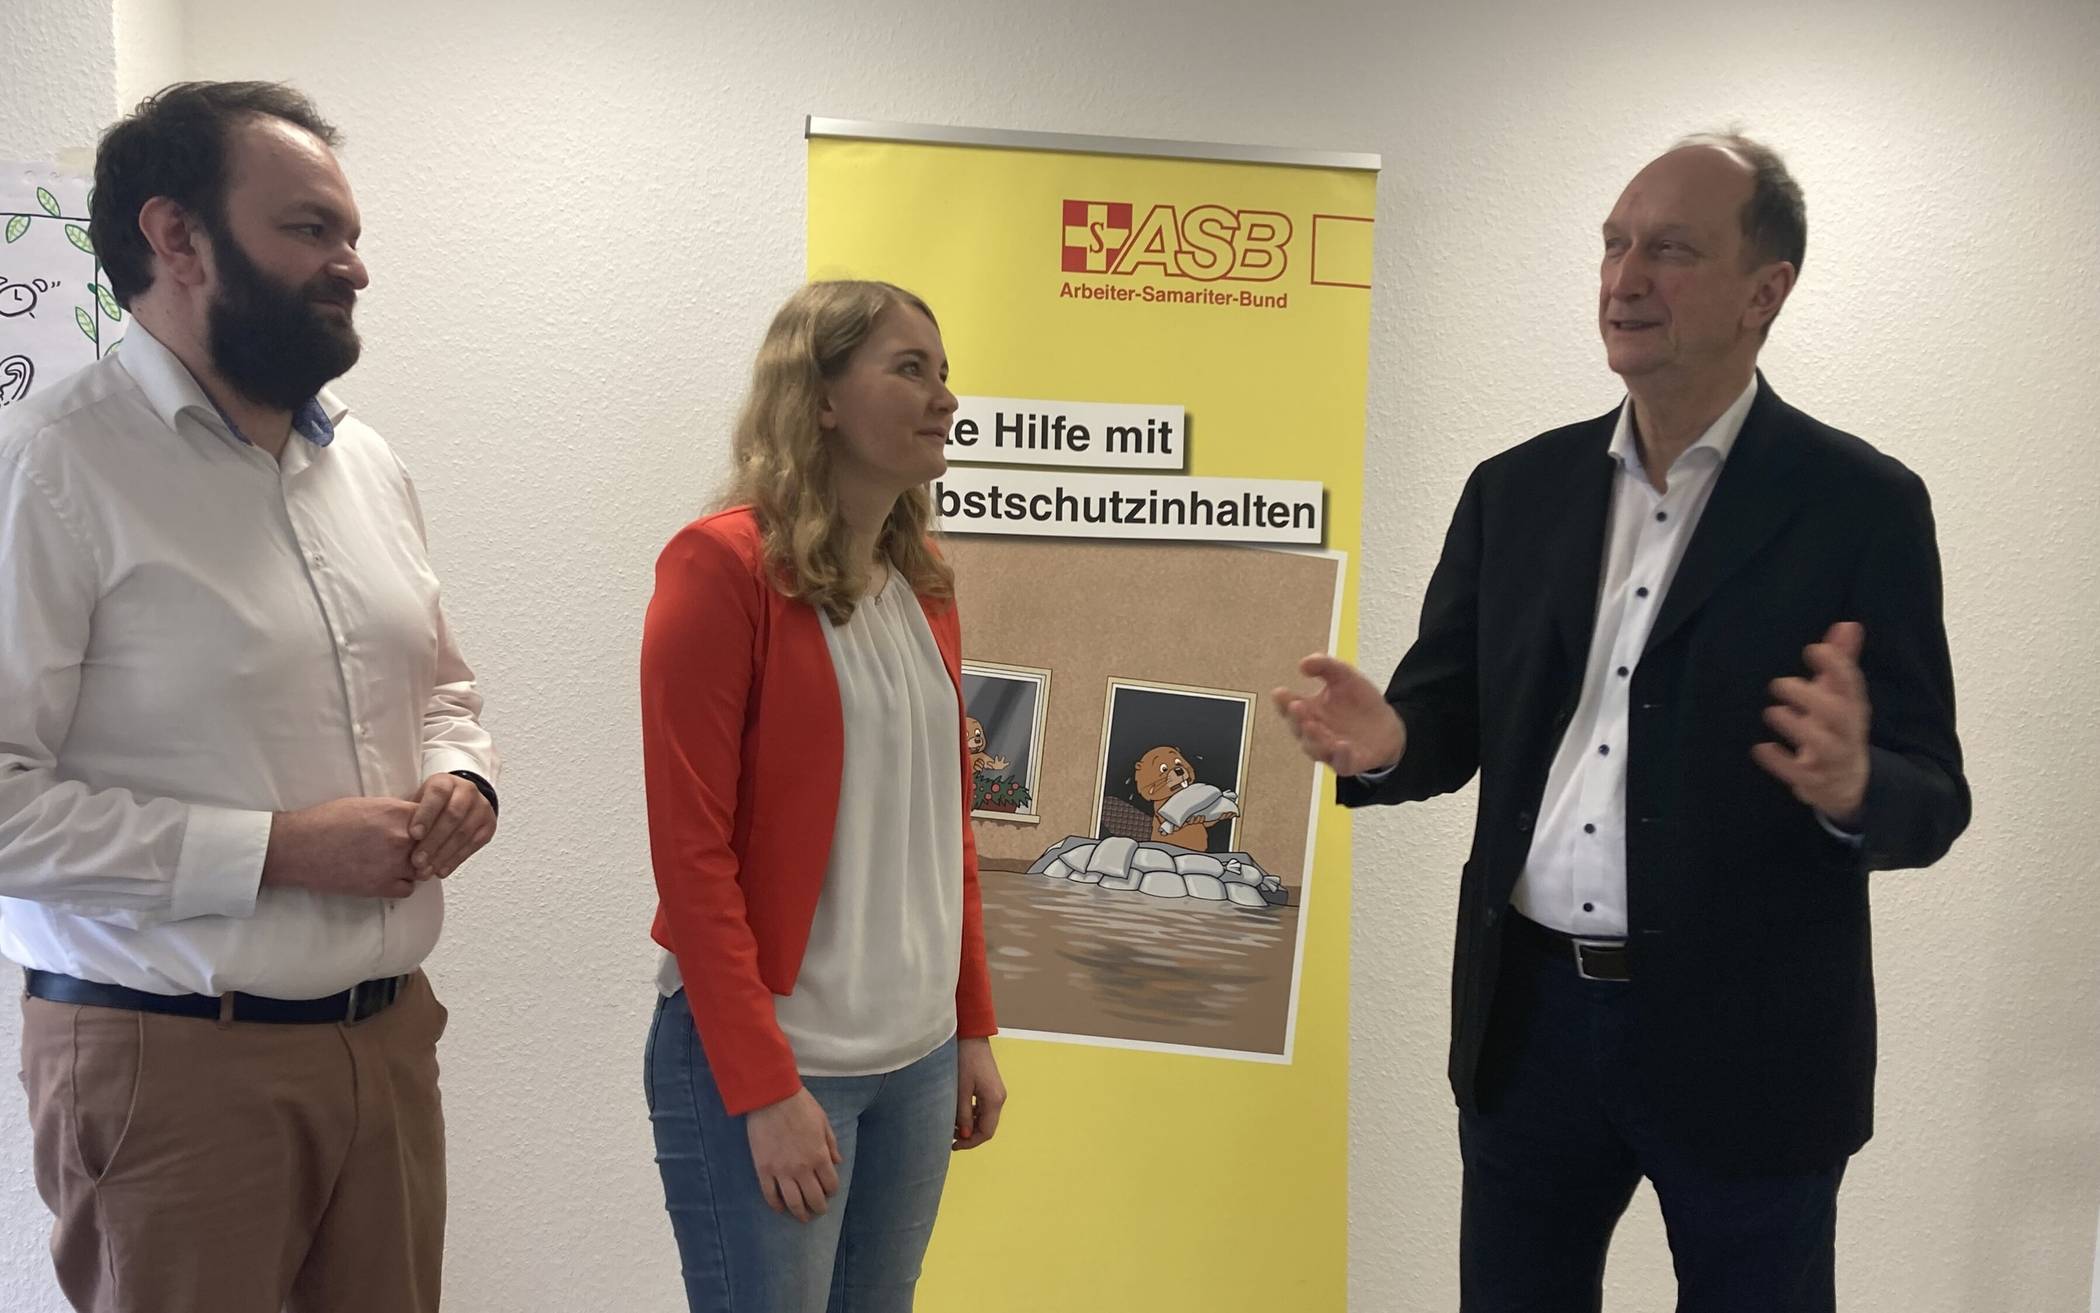 Dr. Klaus Wiener (r.) beim Arbeiter-Samariter-Bund im Gespräch mit Dominik Hohnbaum und Stefanie Einheuser.